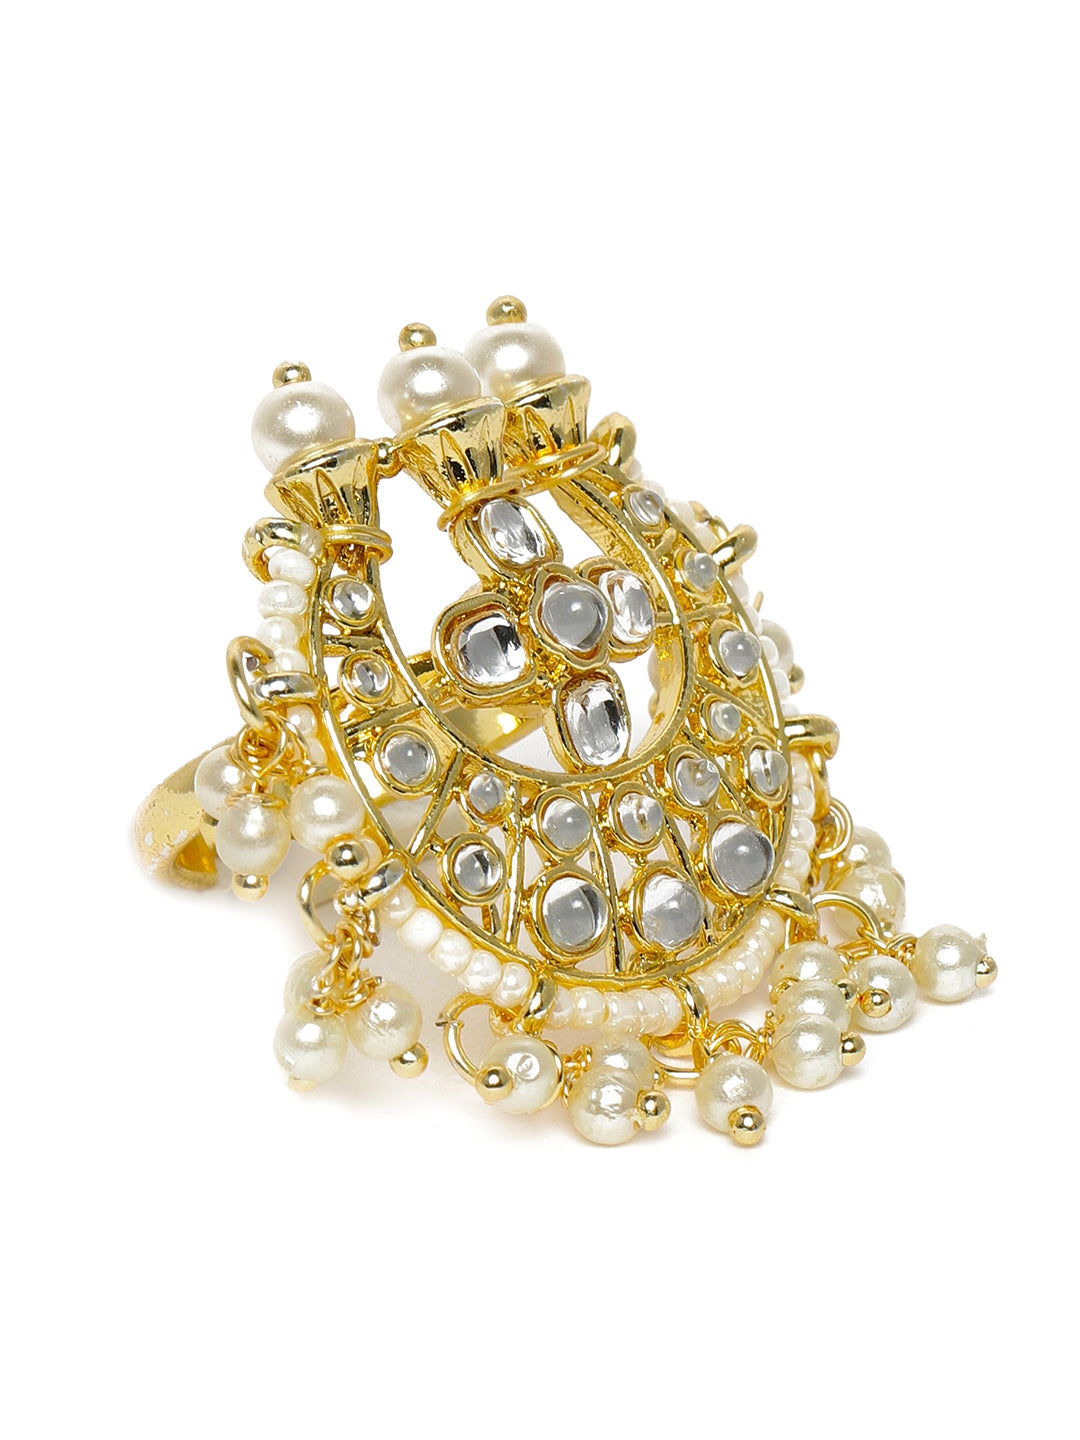 Laida White & Gold-Toned Rhodium Plated Kundan Studded Adjustable Ring